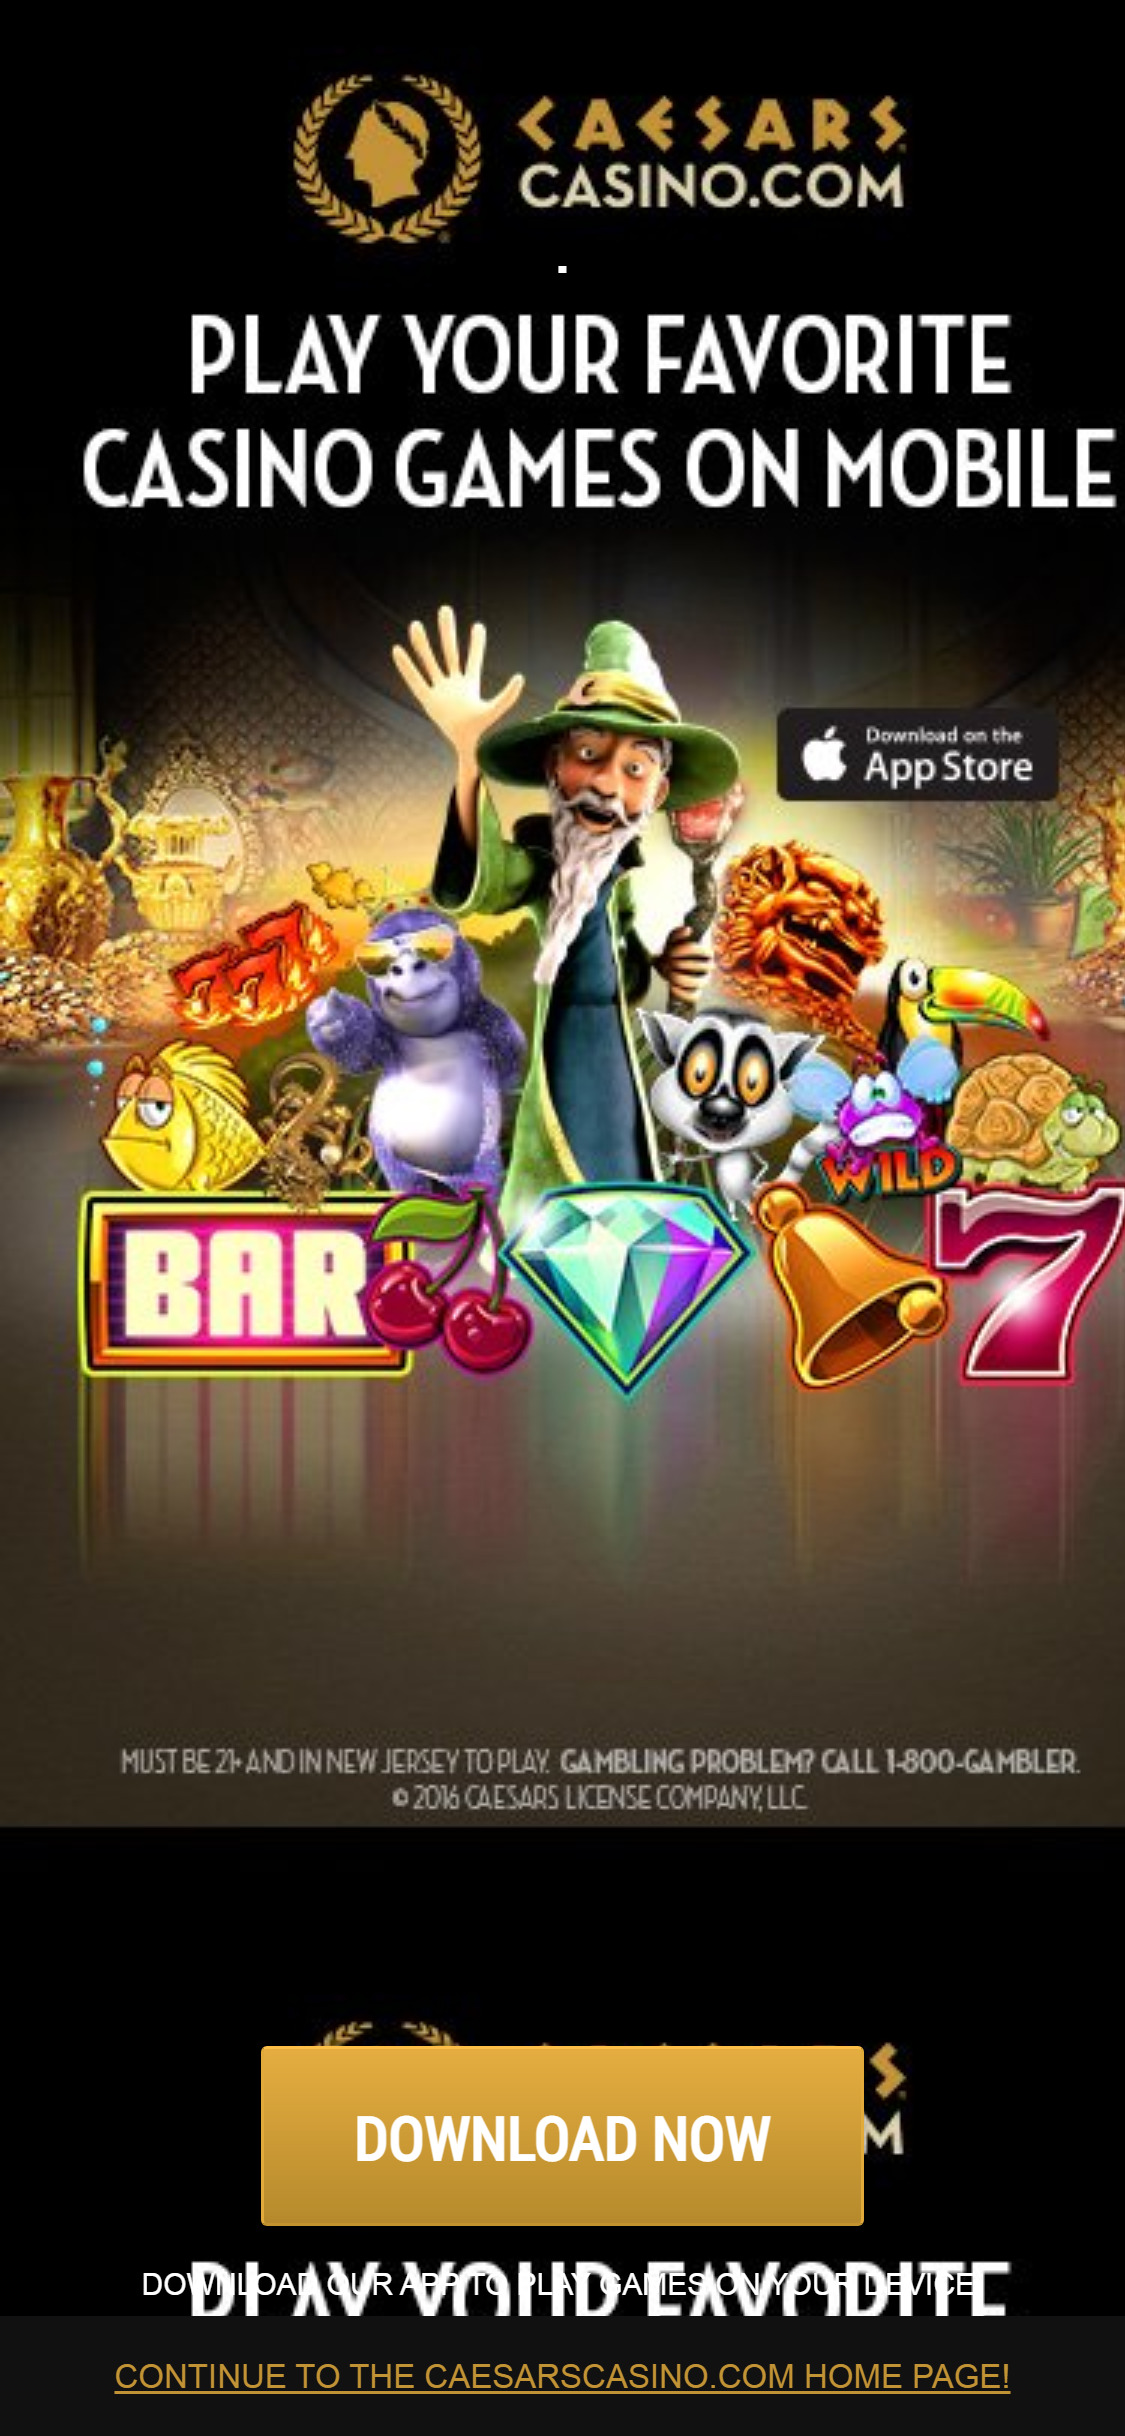 Caesars Casino Mobile App Review